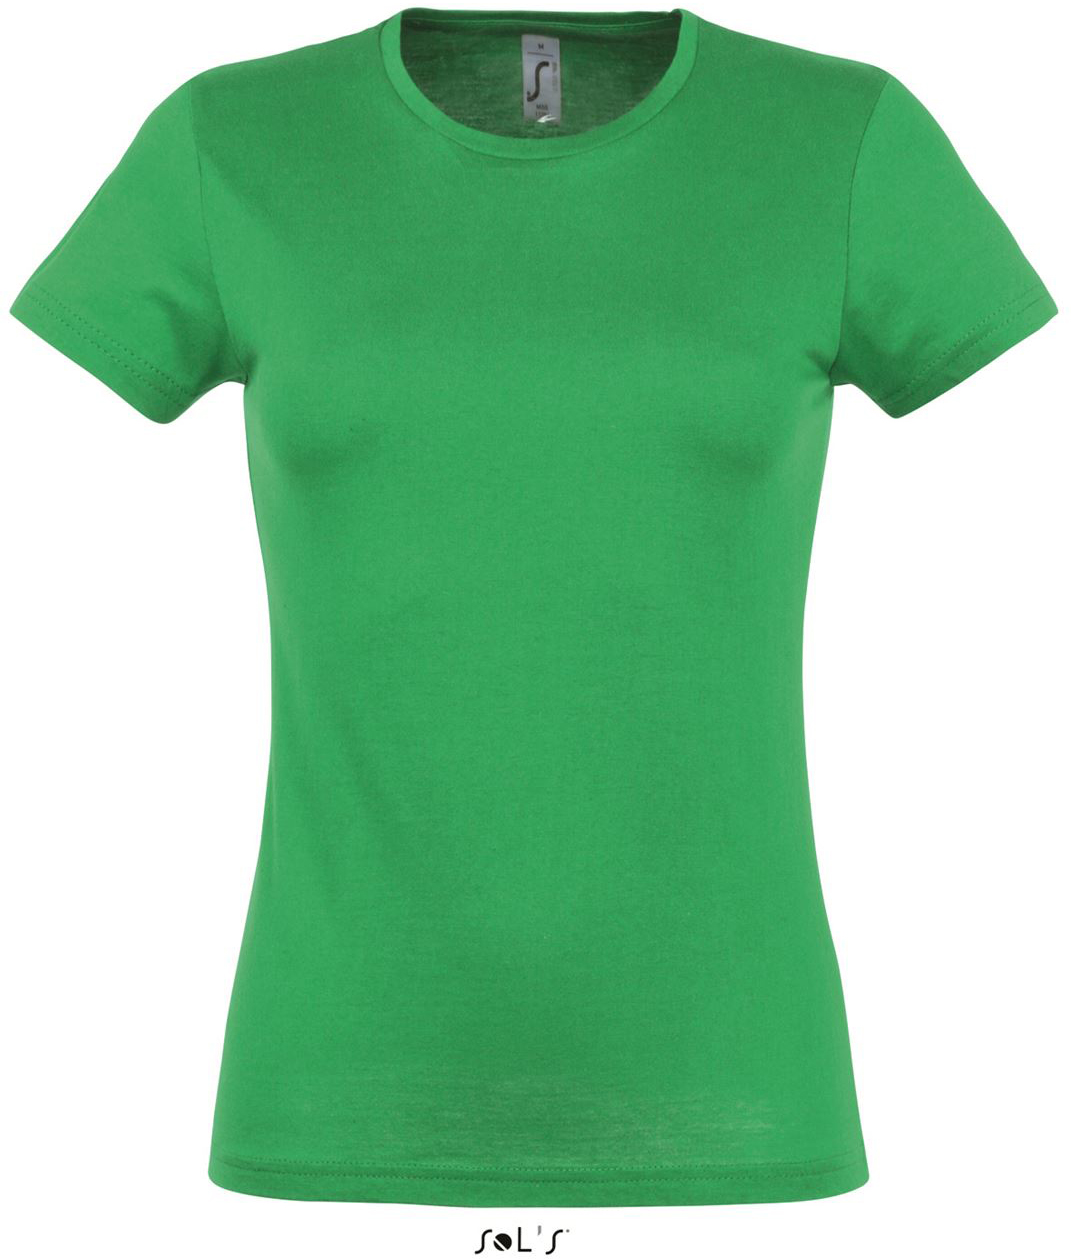 Sol's Miss - Women’s T-shirt - Sol's Miss - Women’s T-shirt - Irish Green